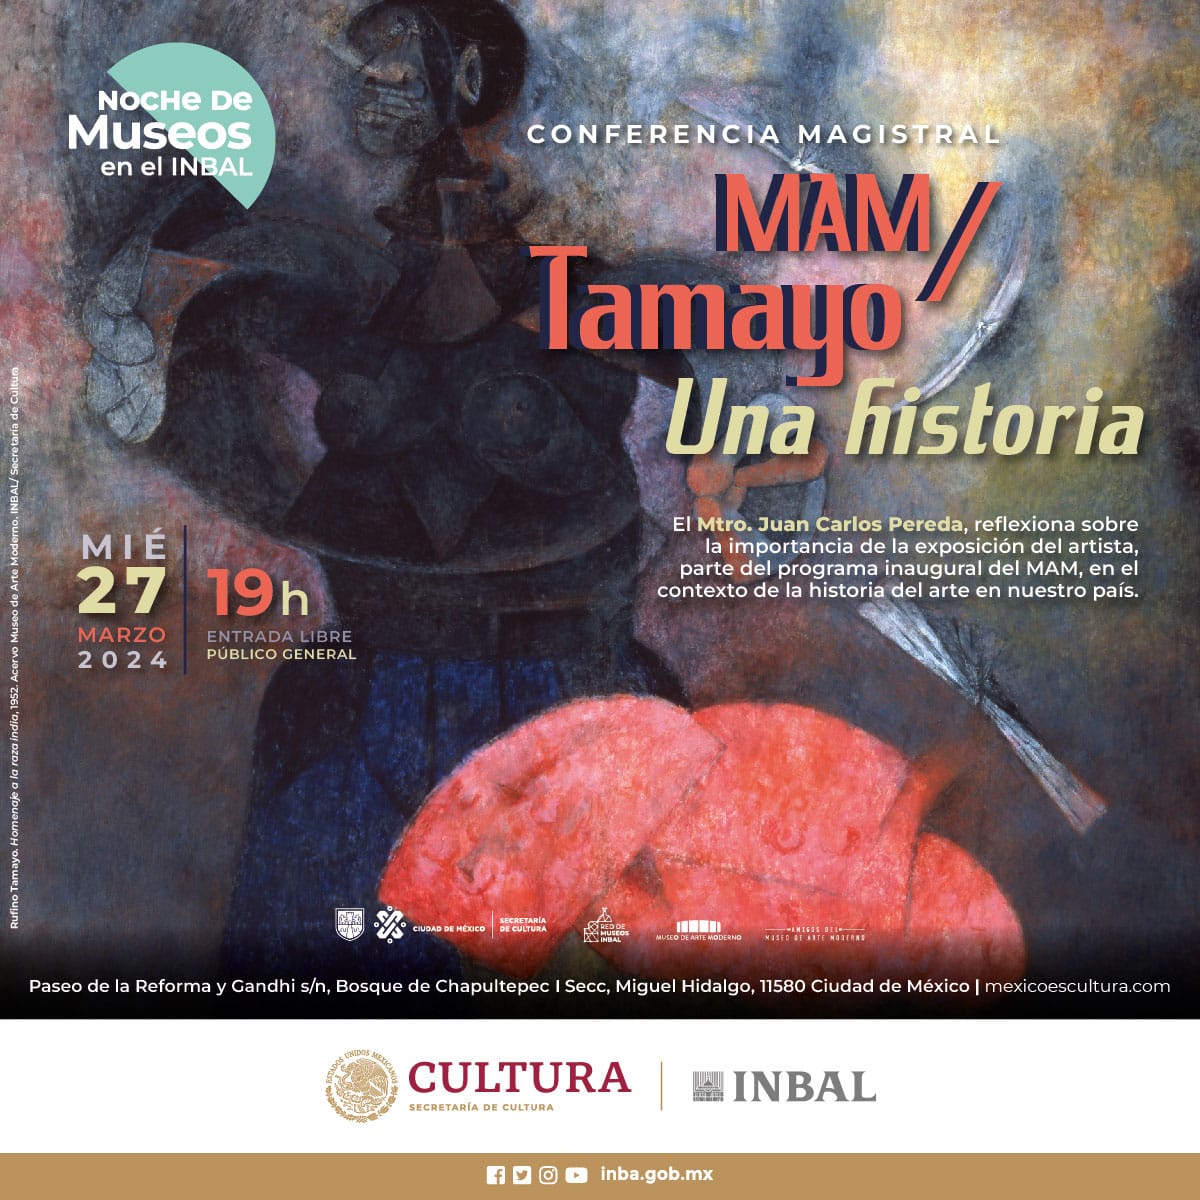 #NocheDeMuseos 'MAM/Tamayo. Una historia'. Conferencia magistral a cargo de Juan Carlos Pereda, que abordará la importancia de la exposición del artista en el contexto de la historia del arte en nuestro país, la cual fue parte del programa inaugural del MAM 19 h. Entrada libre.